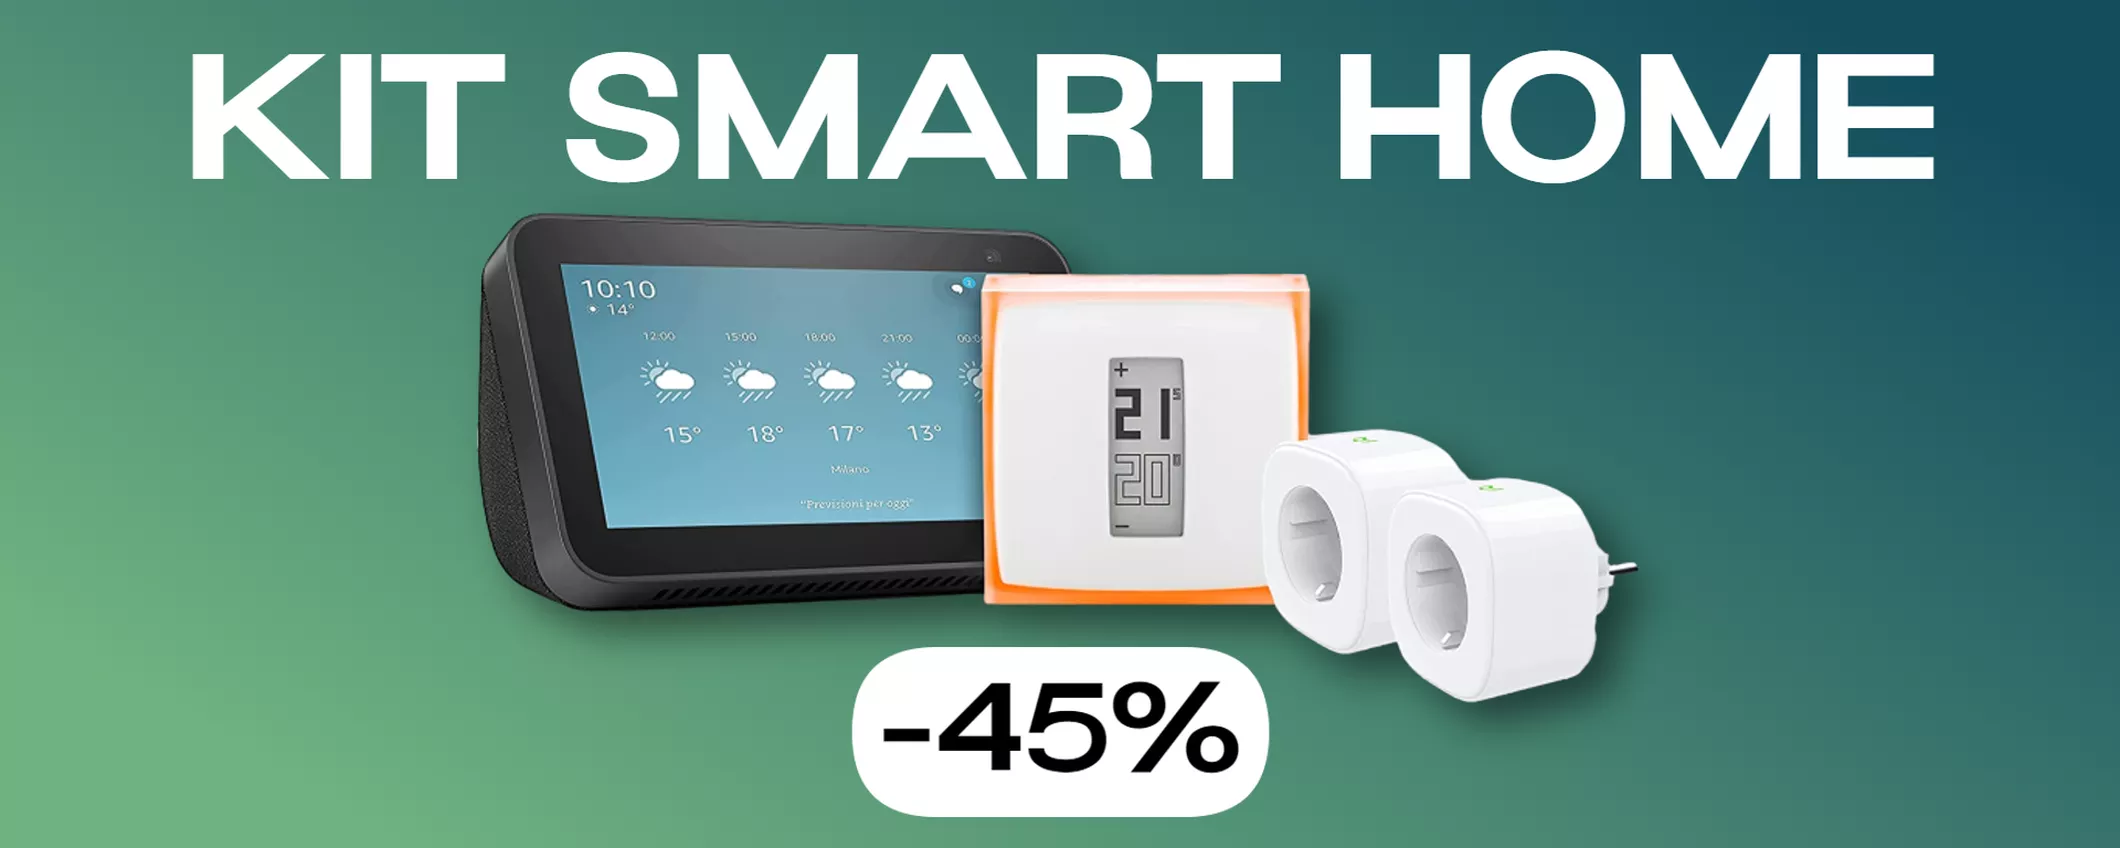 Smart Home, kit con Echo Show 5, termostato Netatmo e prese smart: prezzo CLAMOROSO (-45%)